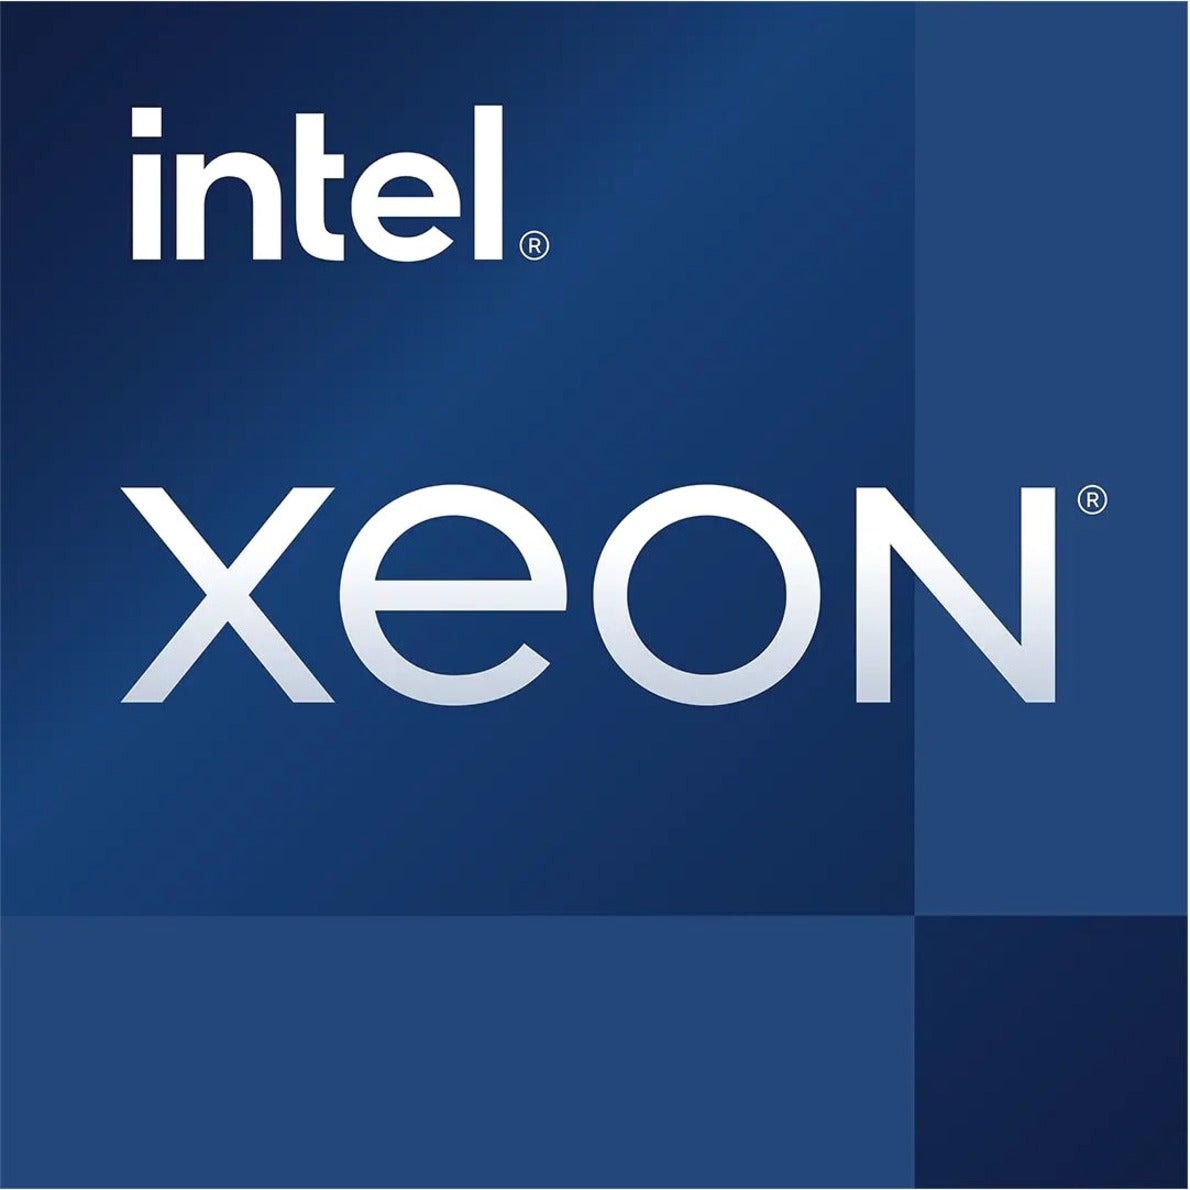 インテル Xeon E-2378 オクタコア E-2378 2.6GHz サーバープロセッサー、16MB L3 キャッシュ、65W サーマルデザインパワー